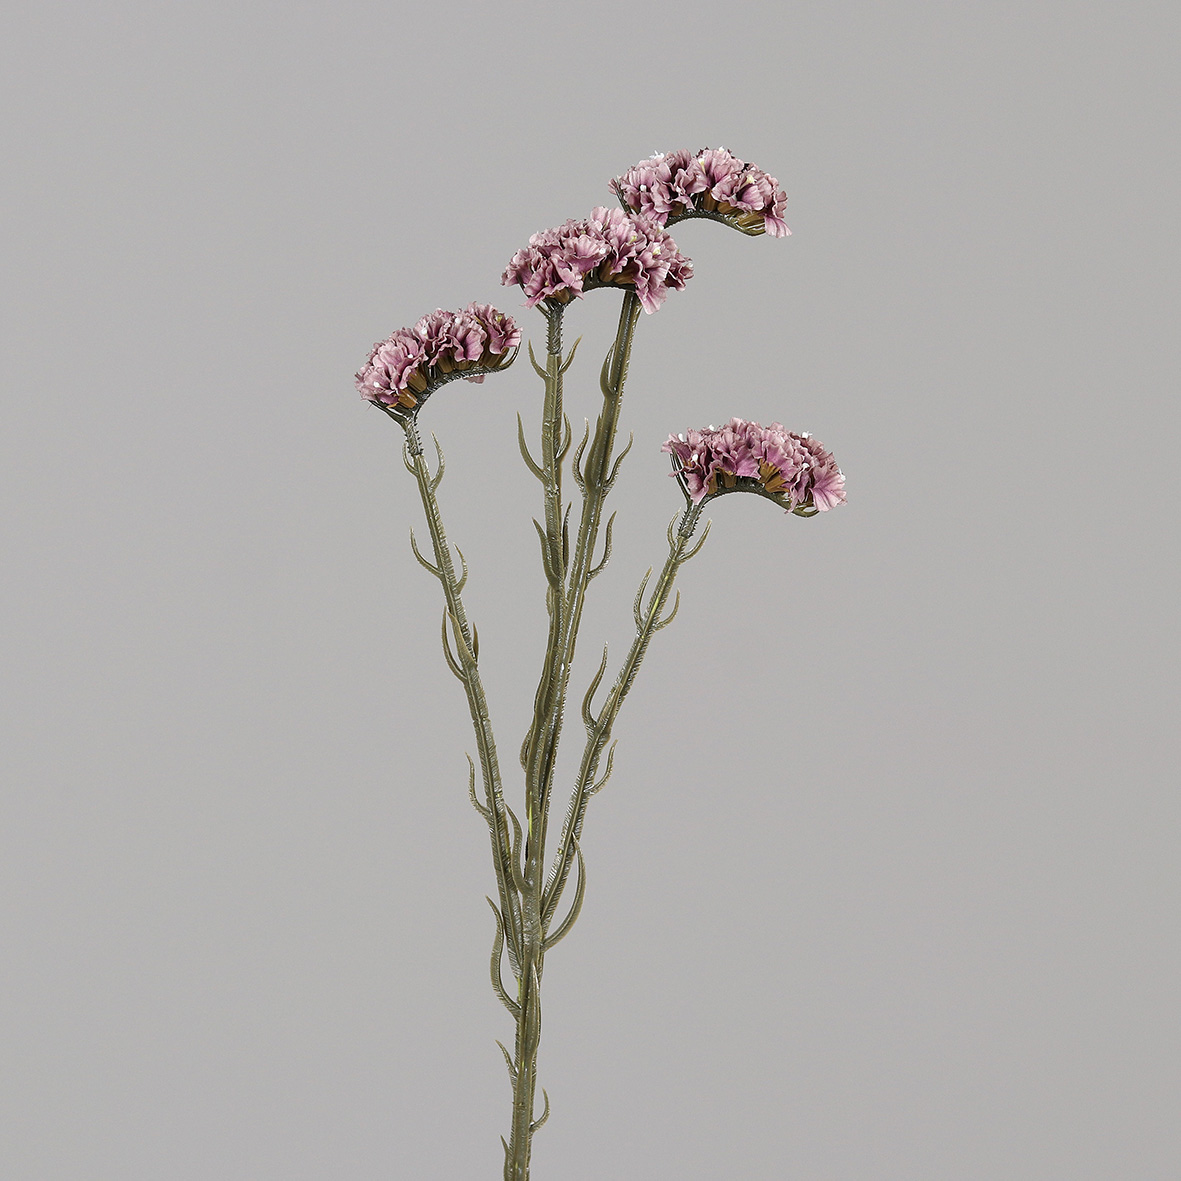 Statice Sinuata / Strandflieder 62cm lavender DP Kunstblumen künstliche Blumen